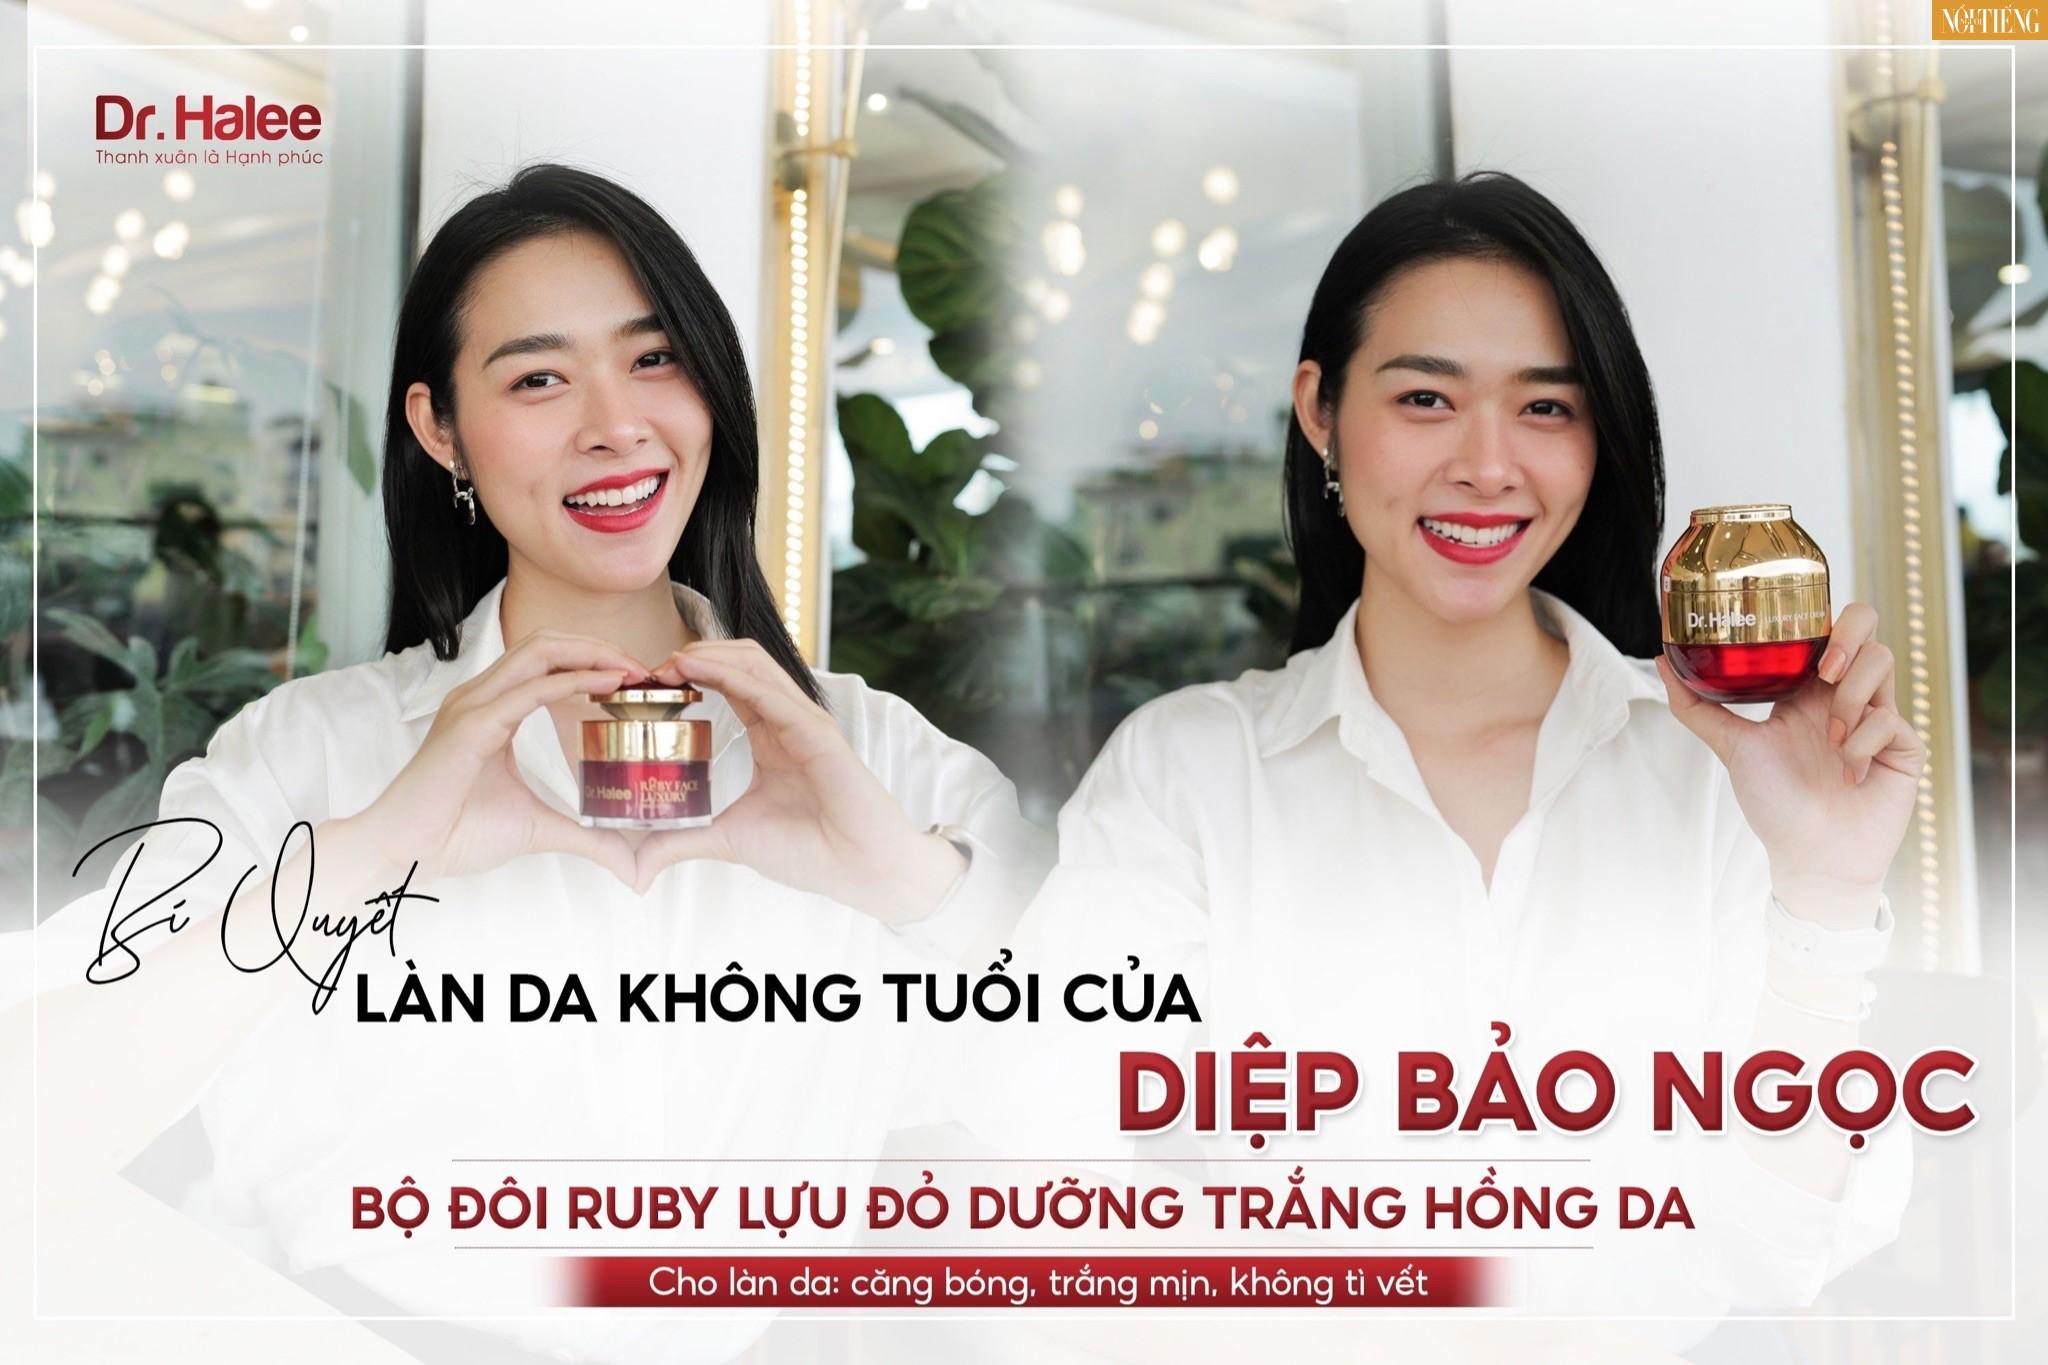 Bộ đôi Ruby Lựu đỏ - Bí quyết chăm sóc da mỗi ngày của Diệp Bảo Ngọc